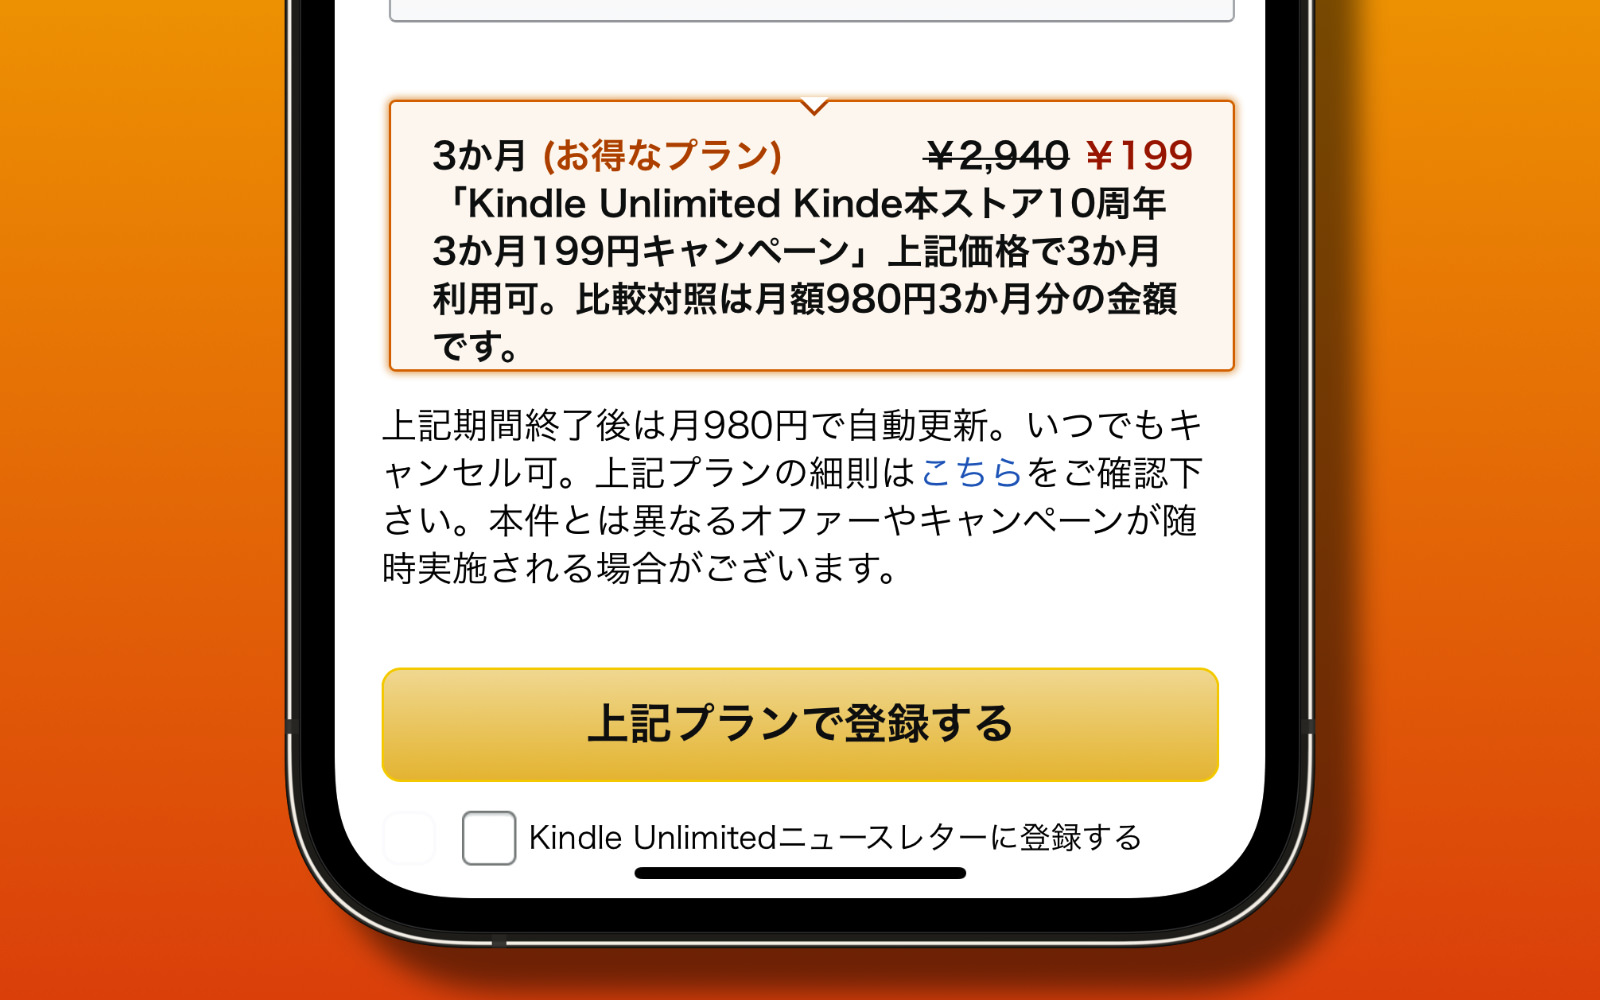 Kindle Unlimited 3month 199yen plan